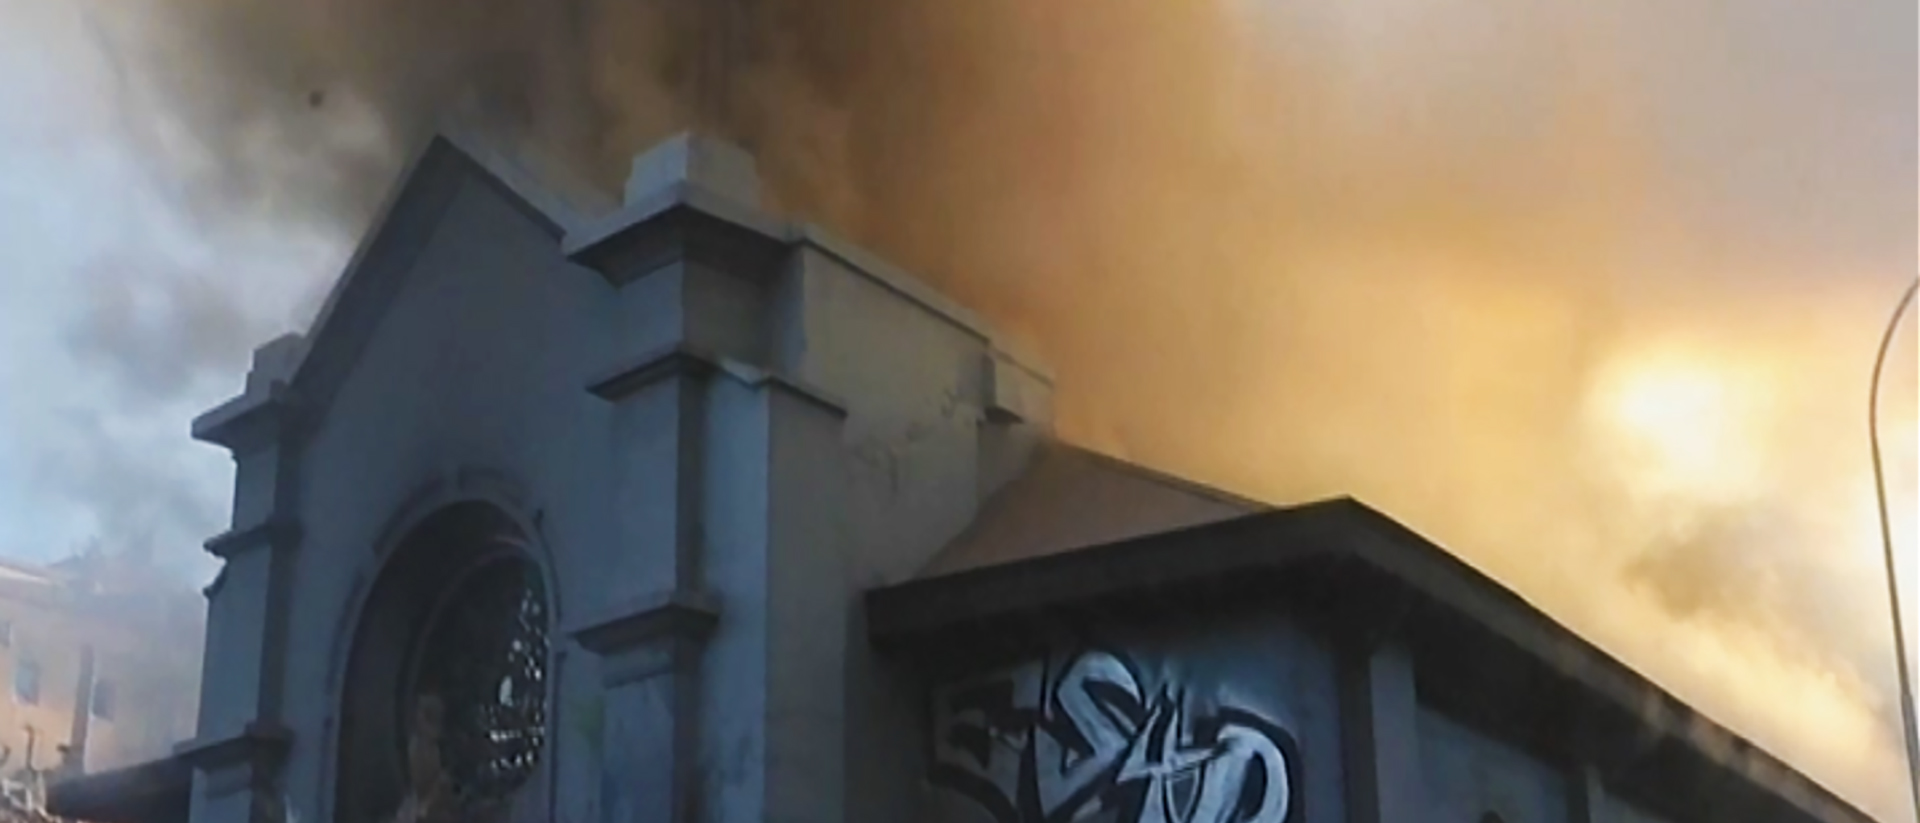 Une des deux église incendiées à Santigo le 18 octobre 2020 | capture sky-news